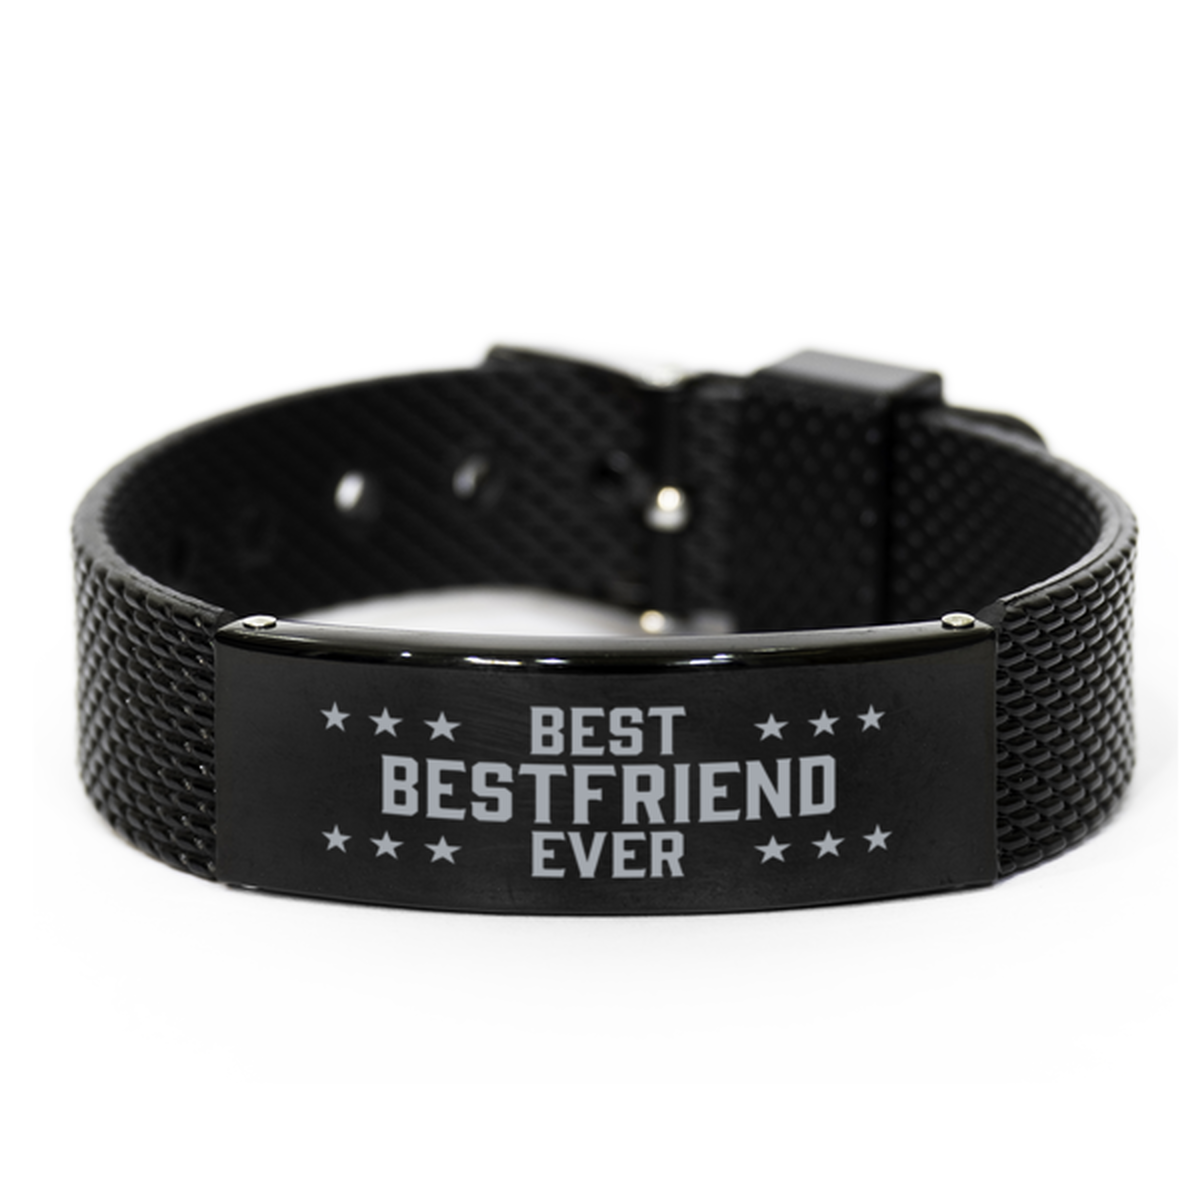 Best Bestfriend Ever Bestfriend Gifts, Gag Engraved Bracelet For Bestfriend, Best Family Gifts For Men Women